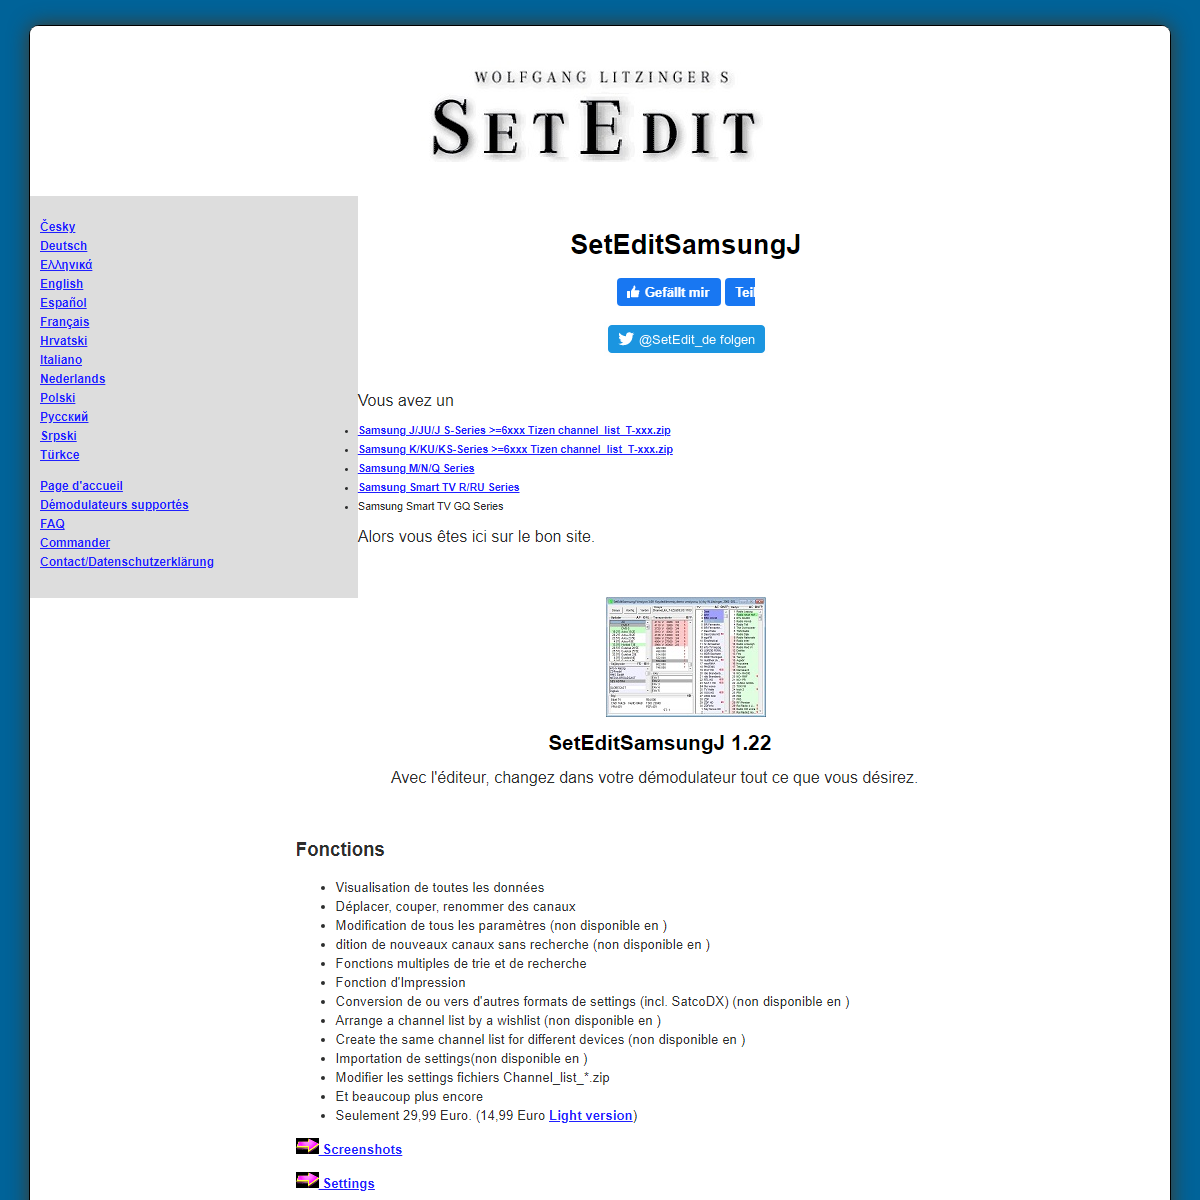 A complete backup of https://www.setedit.de/SetEdit.php?spr=4&Editor=163